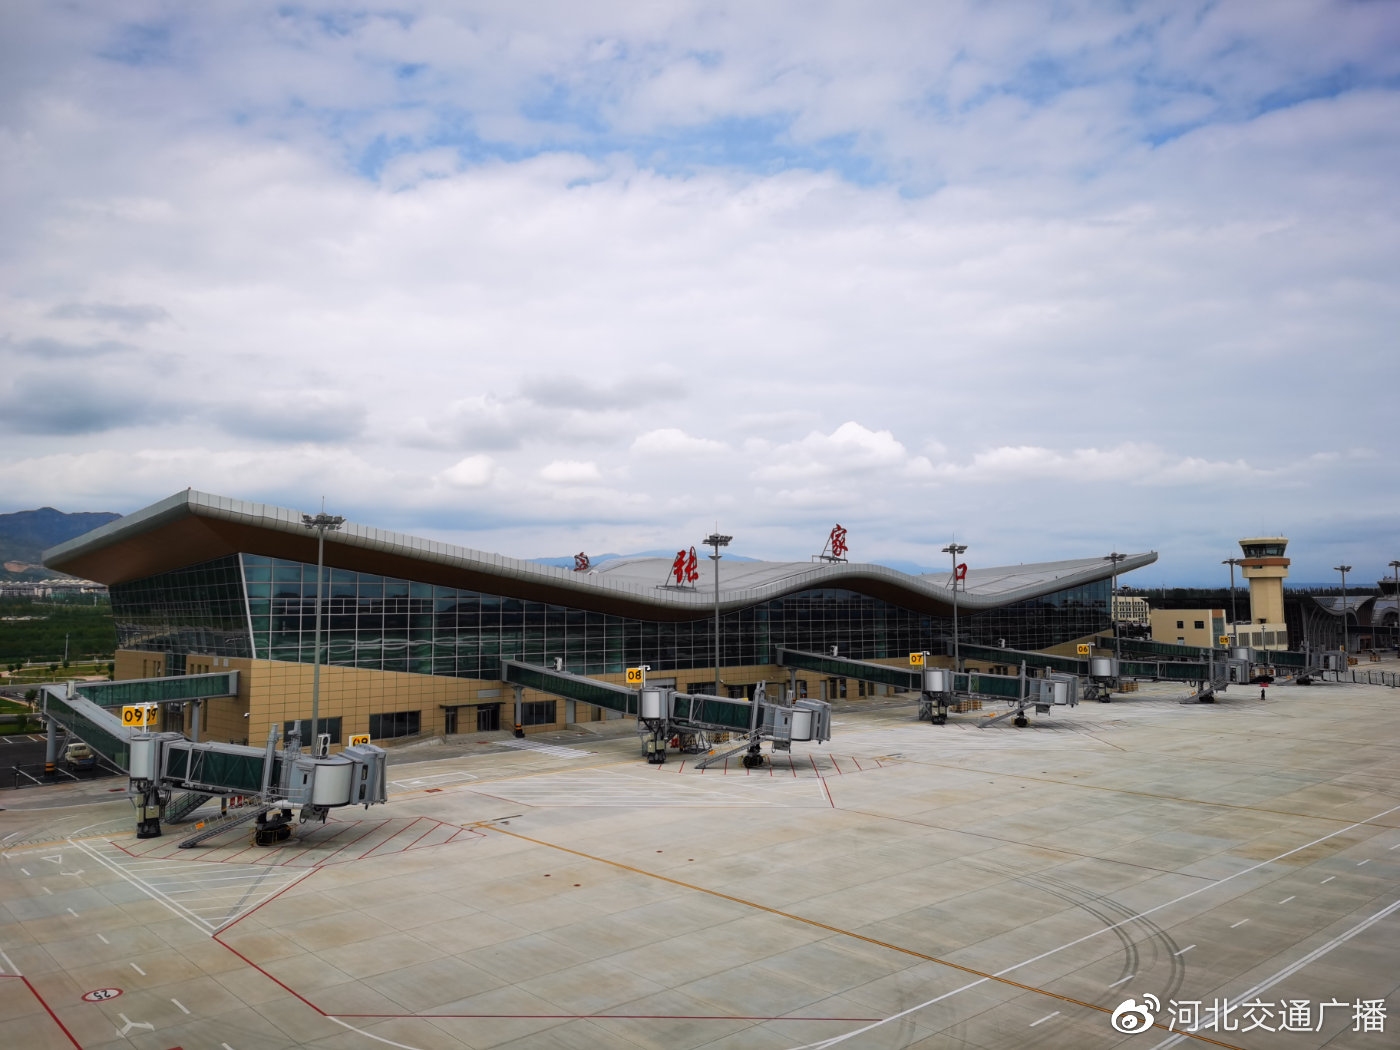 2020年8月3日9c6267航班平安抵达张家口宁远机场2号航站楼,标志着